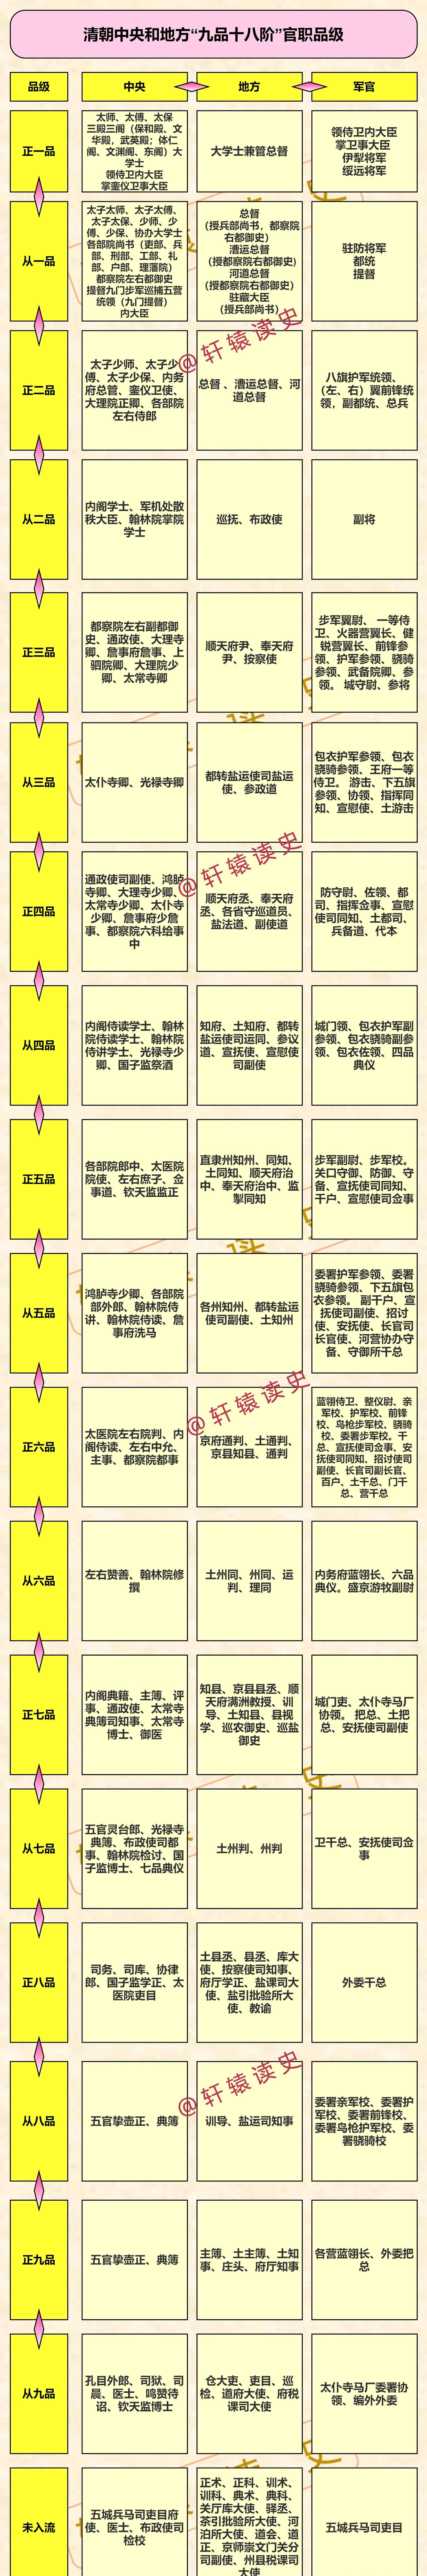 解读大清王朝的四级军政体系和九品十八阶官制